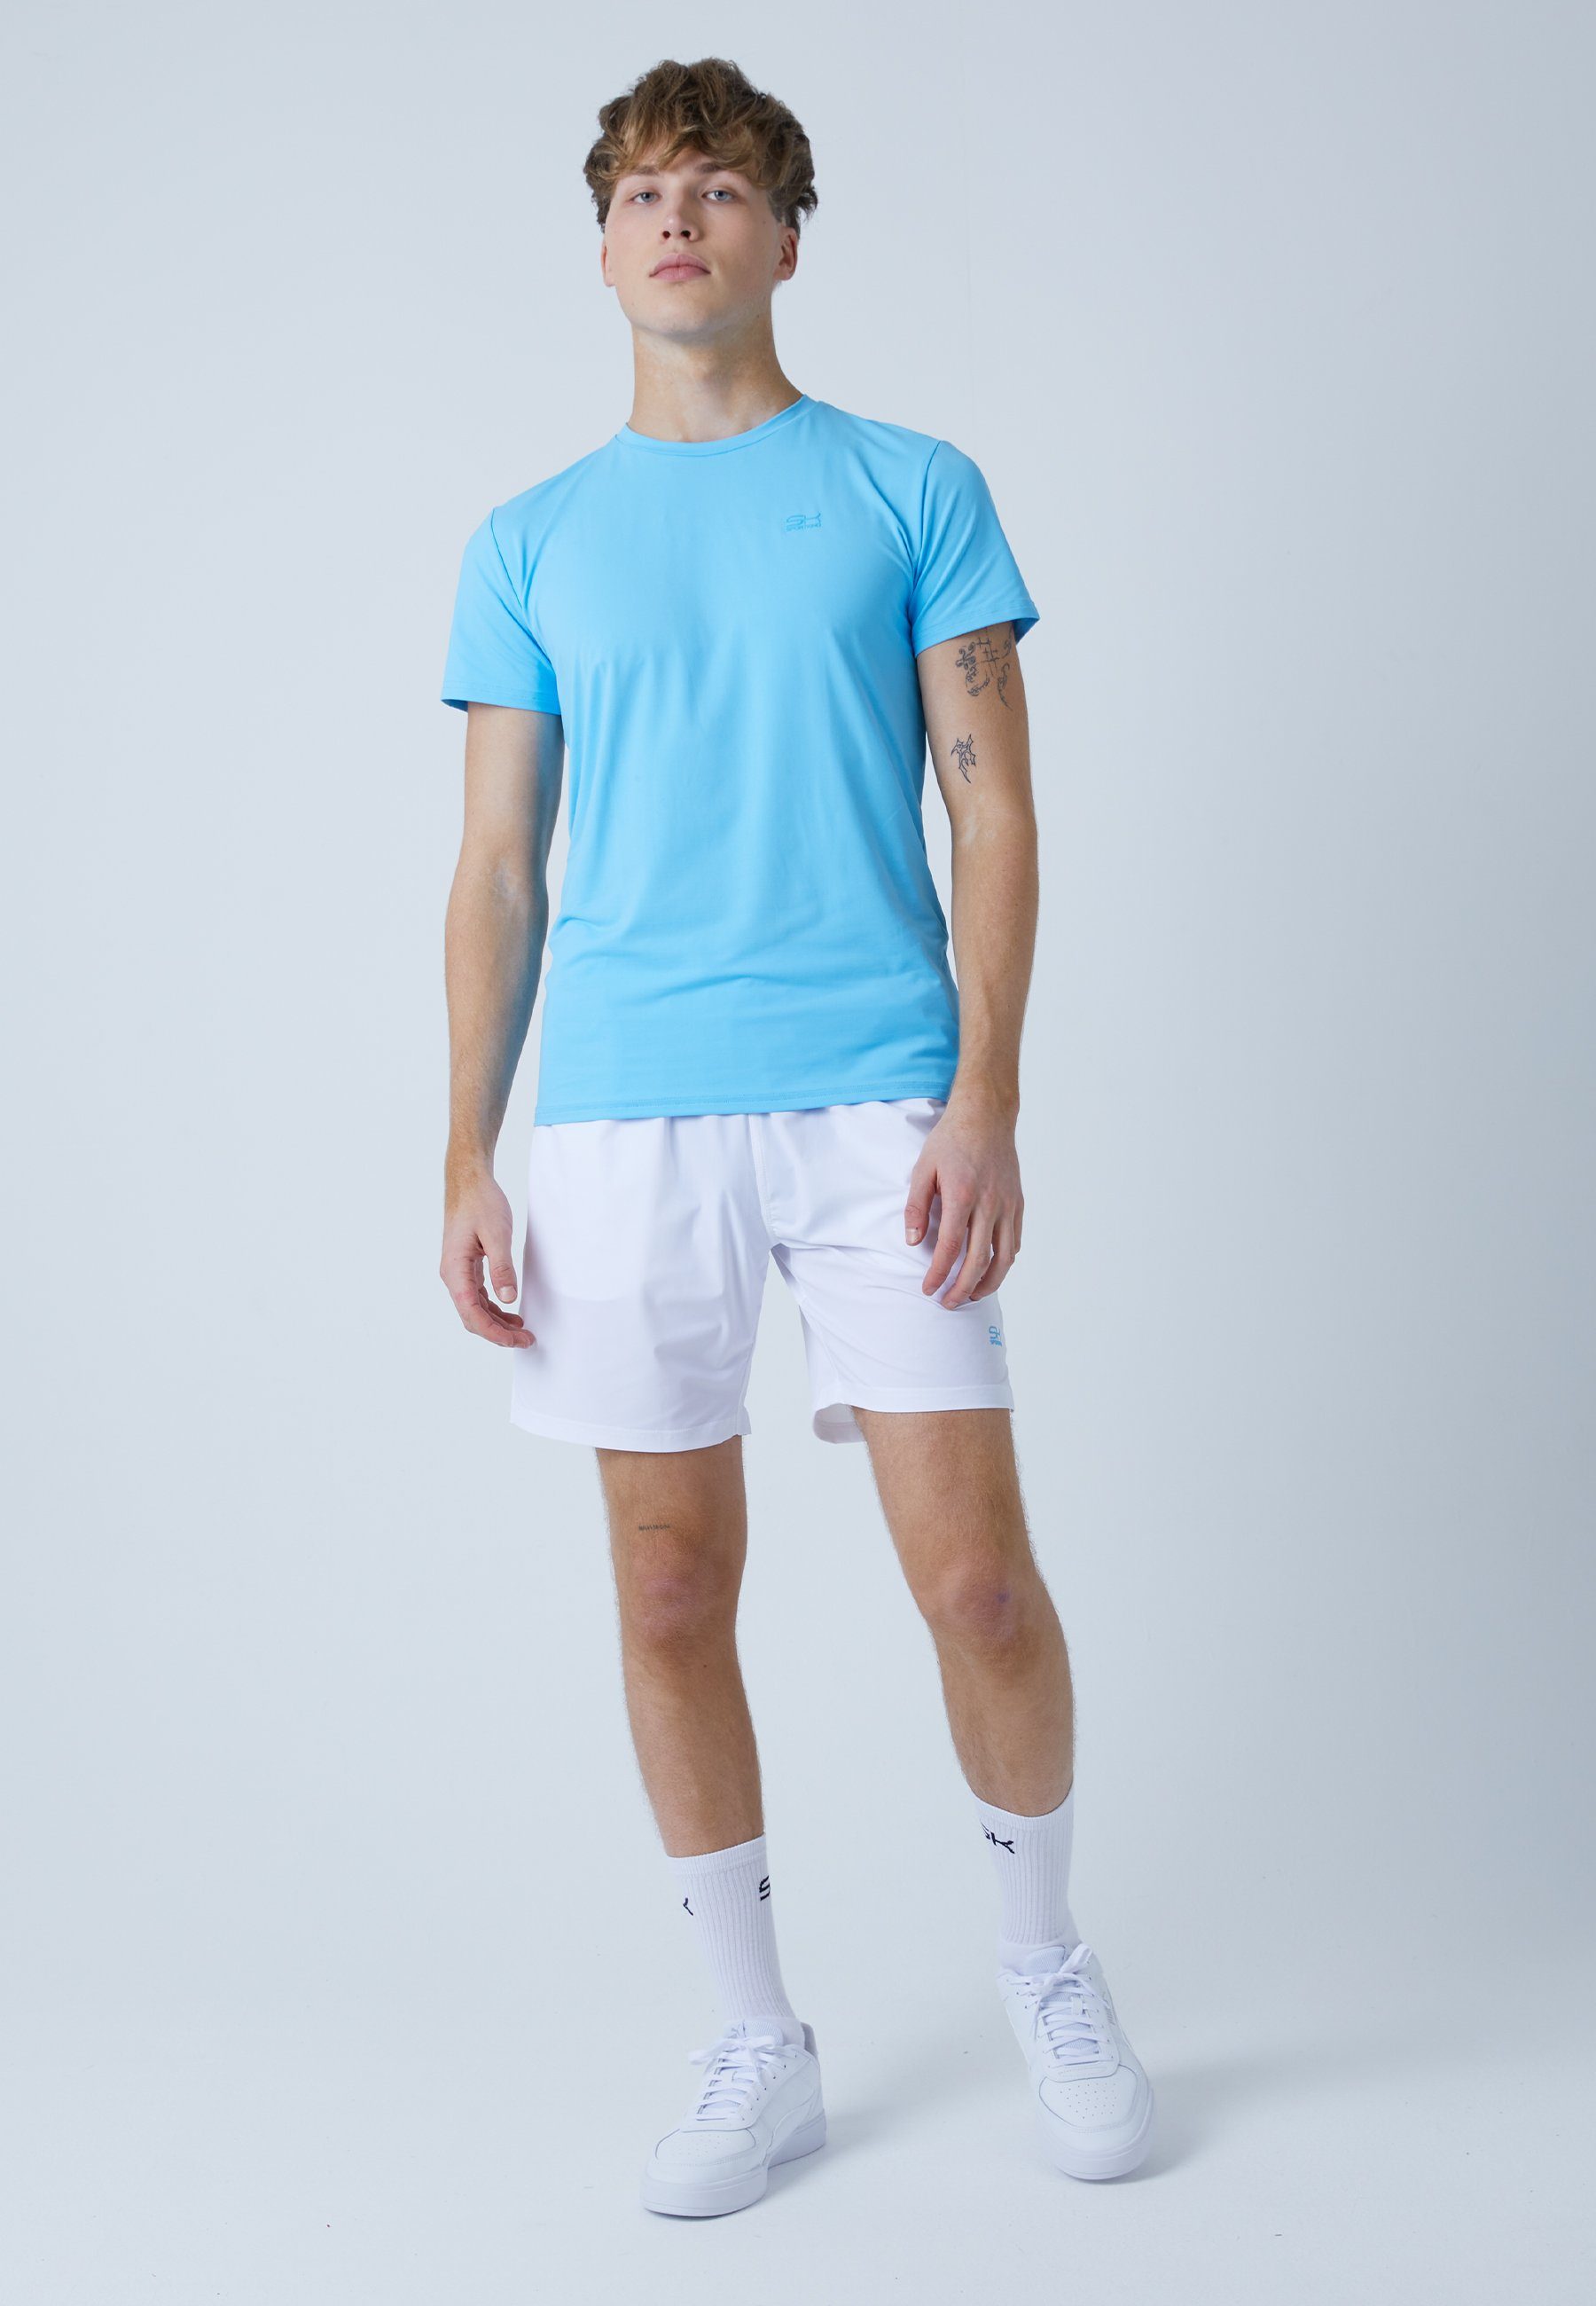 Tennis Funktionsshirt T-Shirt hellblau & Herren SPORTKIND Jungen Rundhals